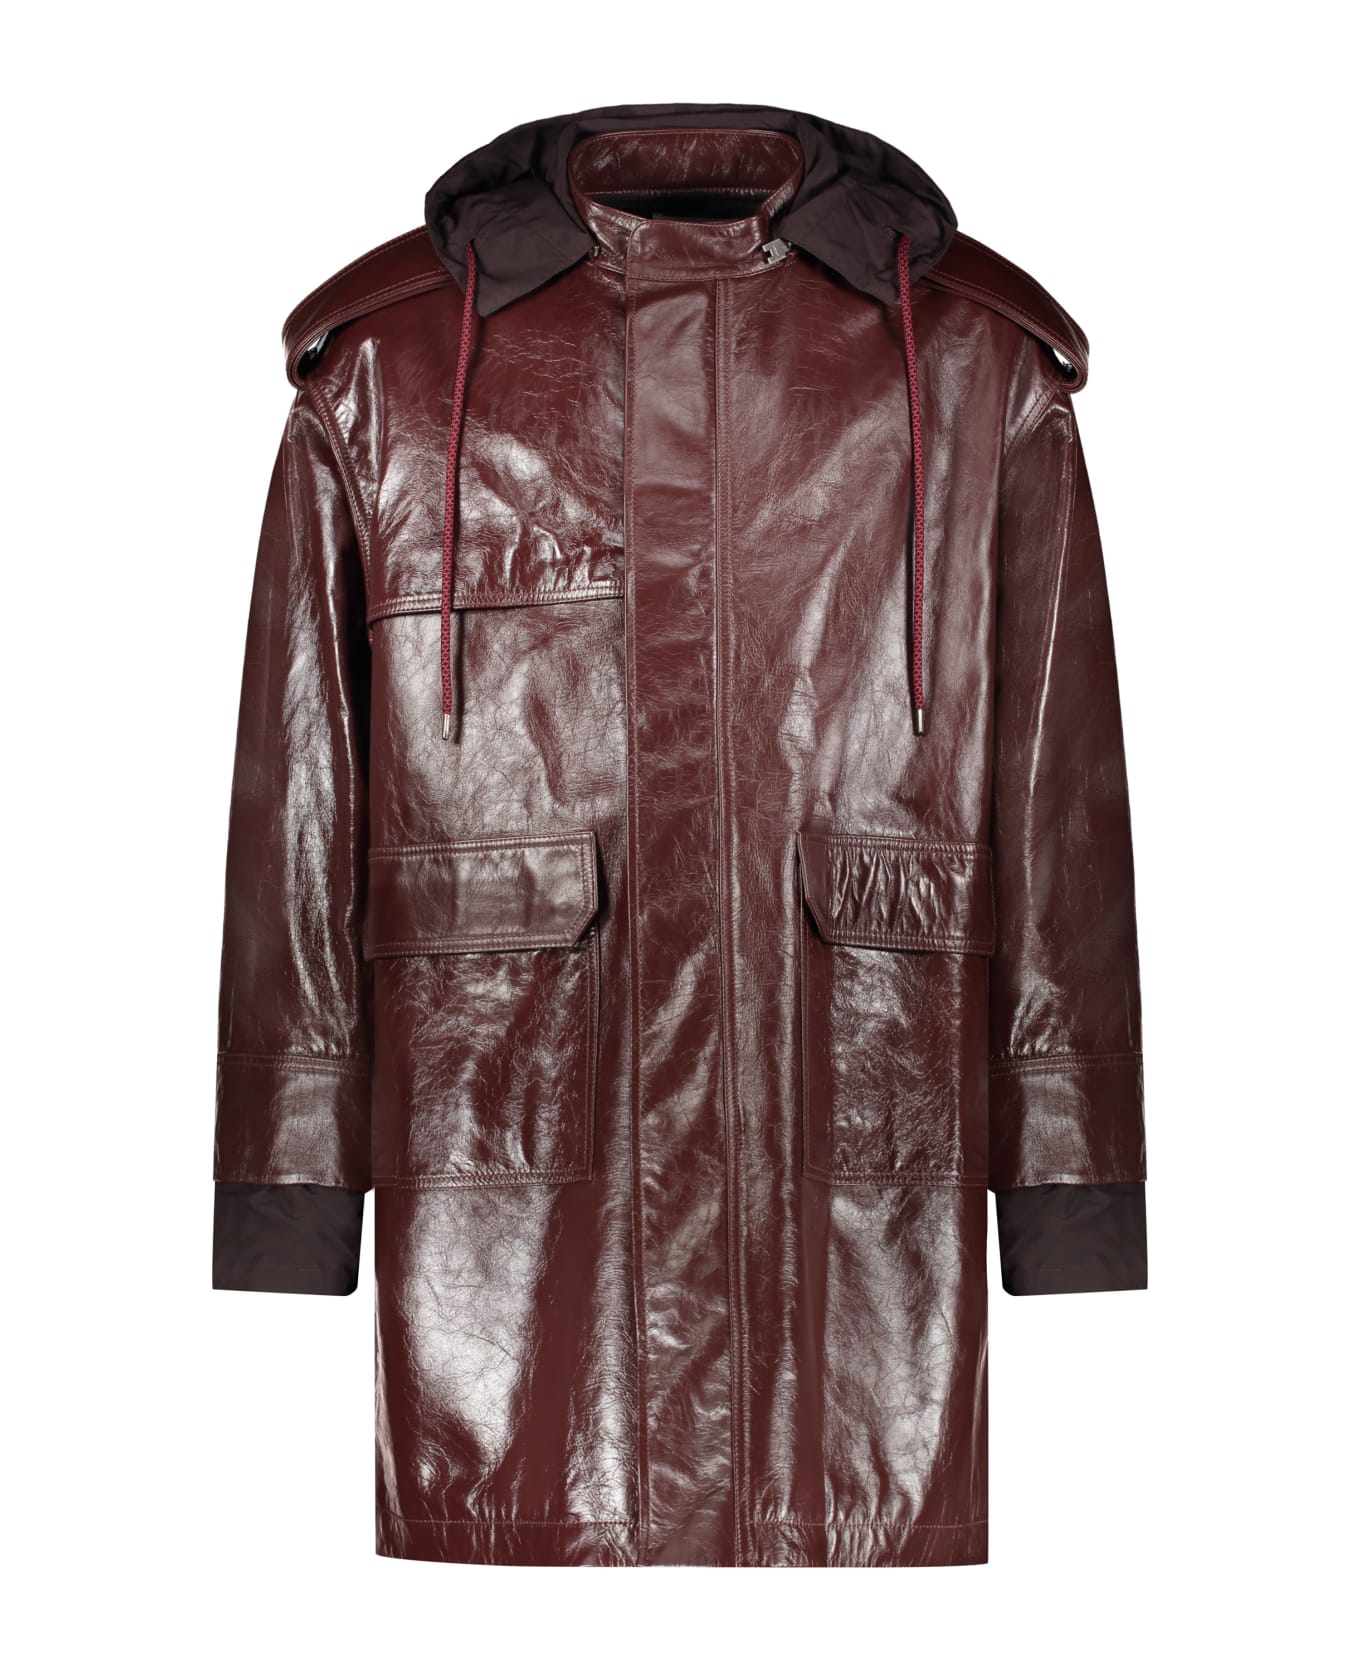 AMBUSH Hooded Leather Jacket - Burgundy コート